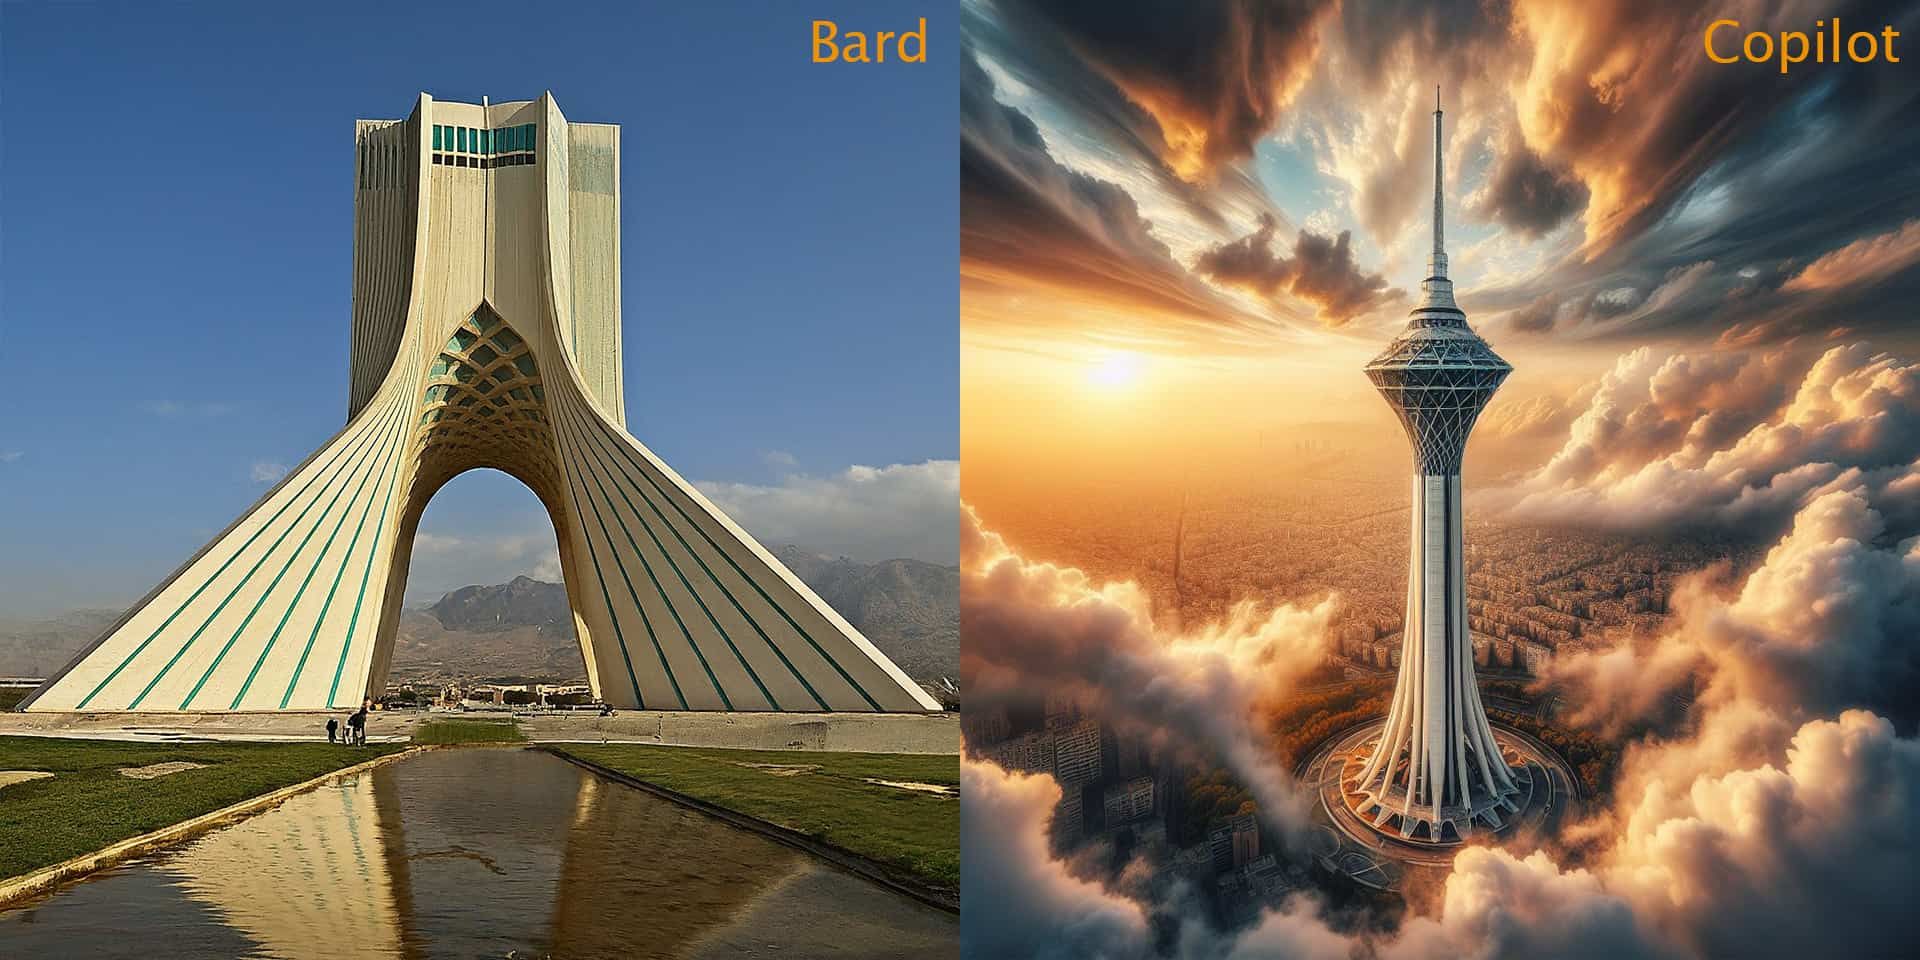 تصویر برج میلاد در سمت راست ساخته شده توسط کوپایلت و برج آزادی در سمت راست ساخته شده توسط بارد